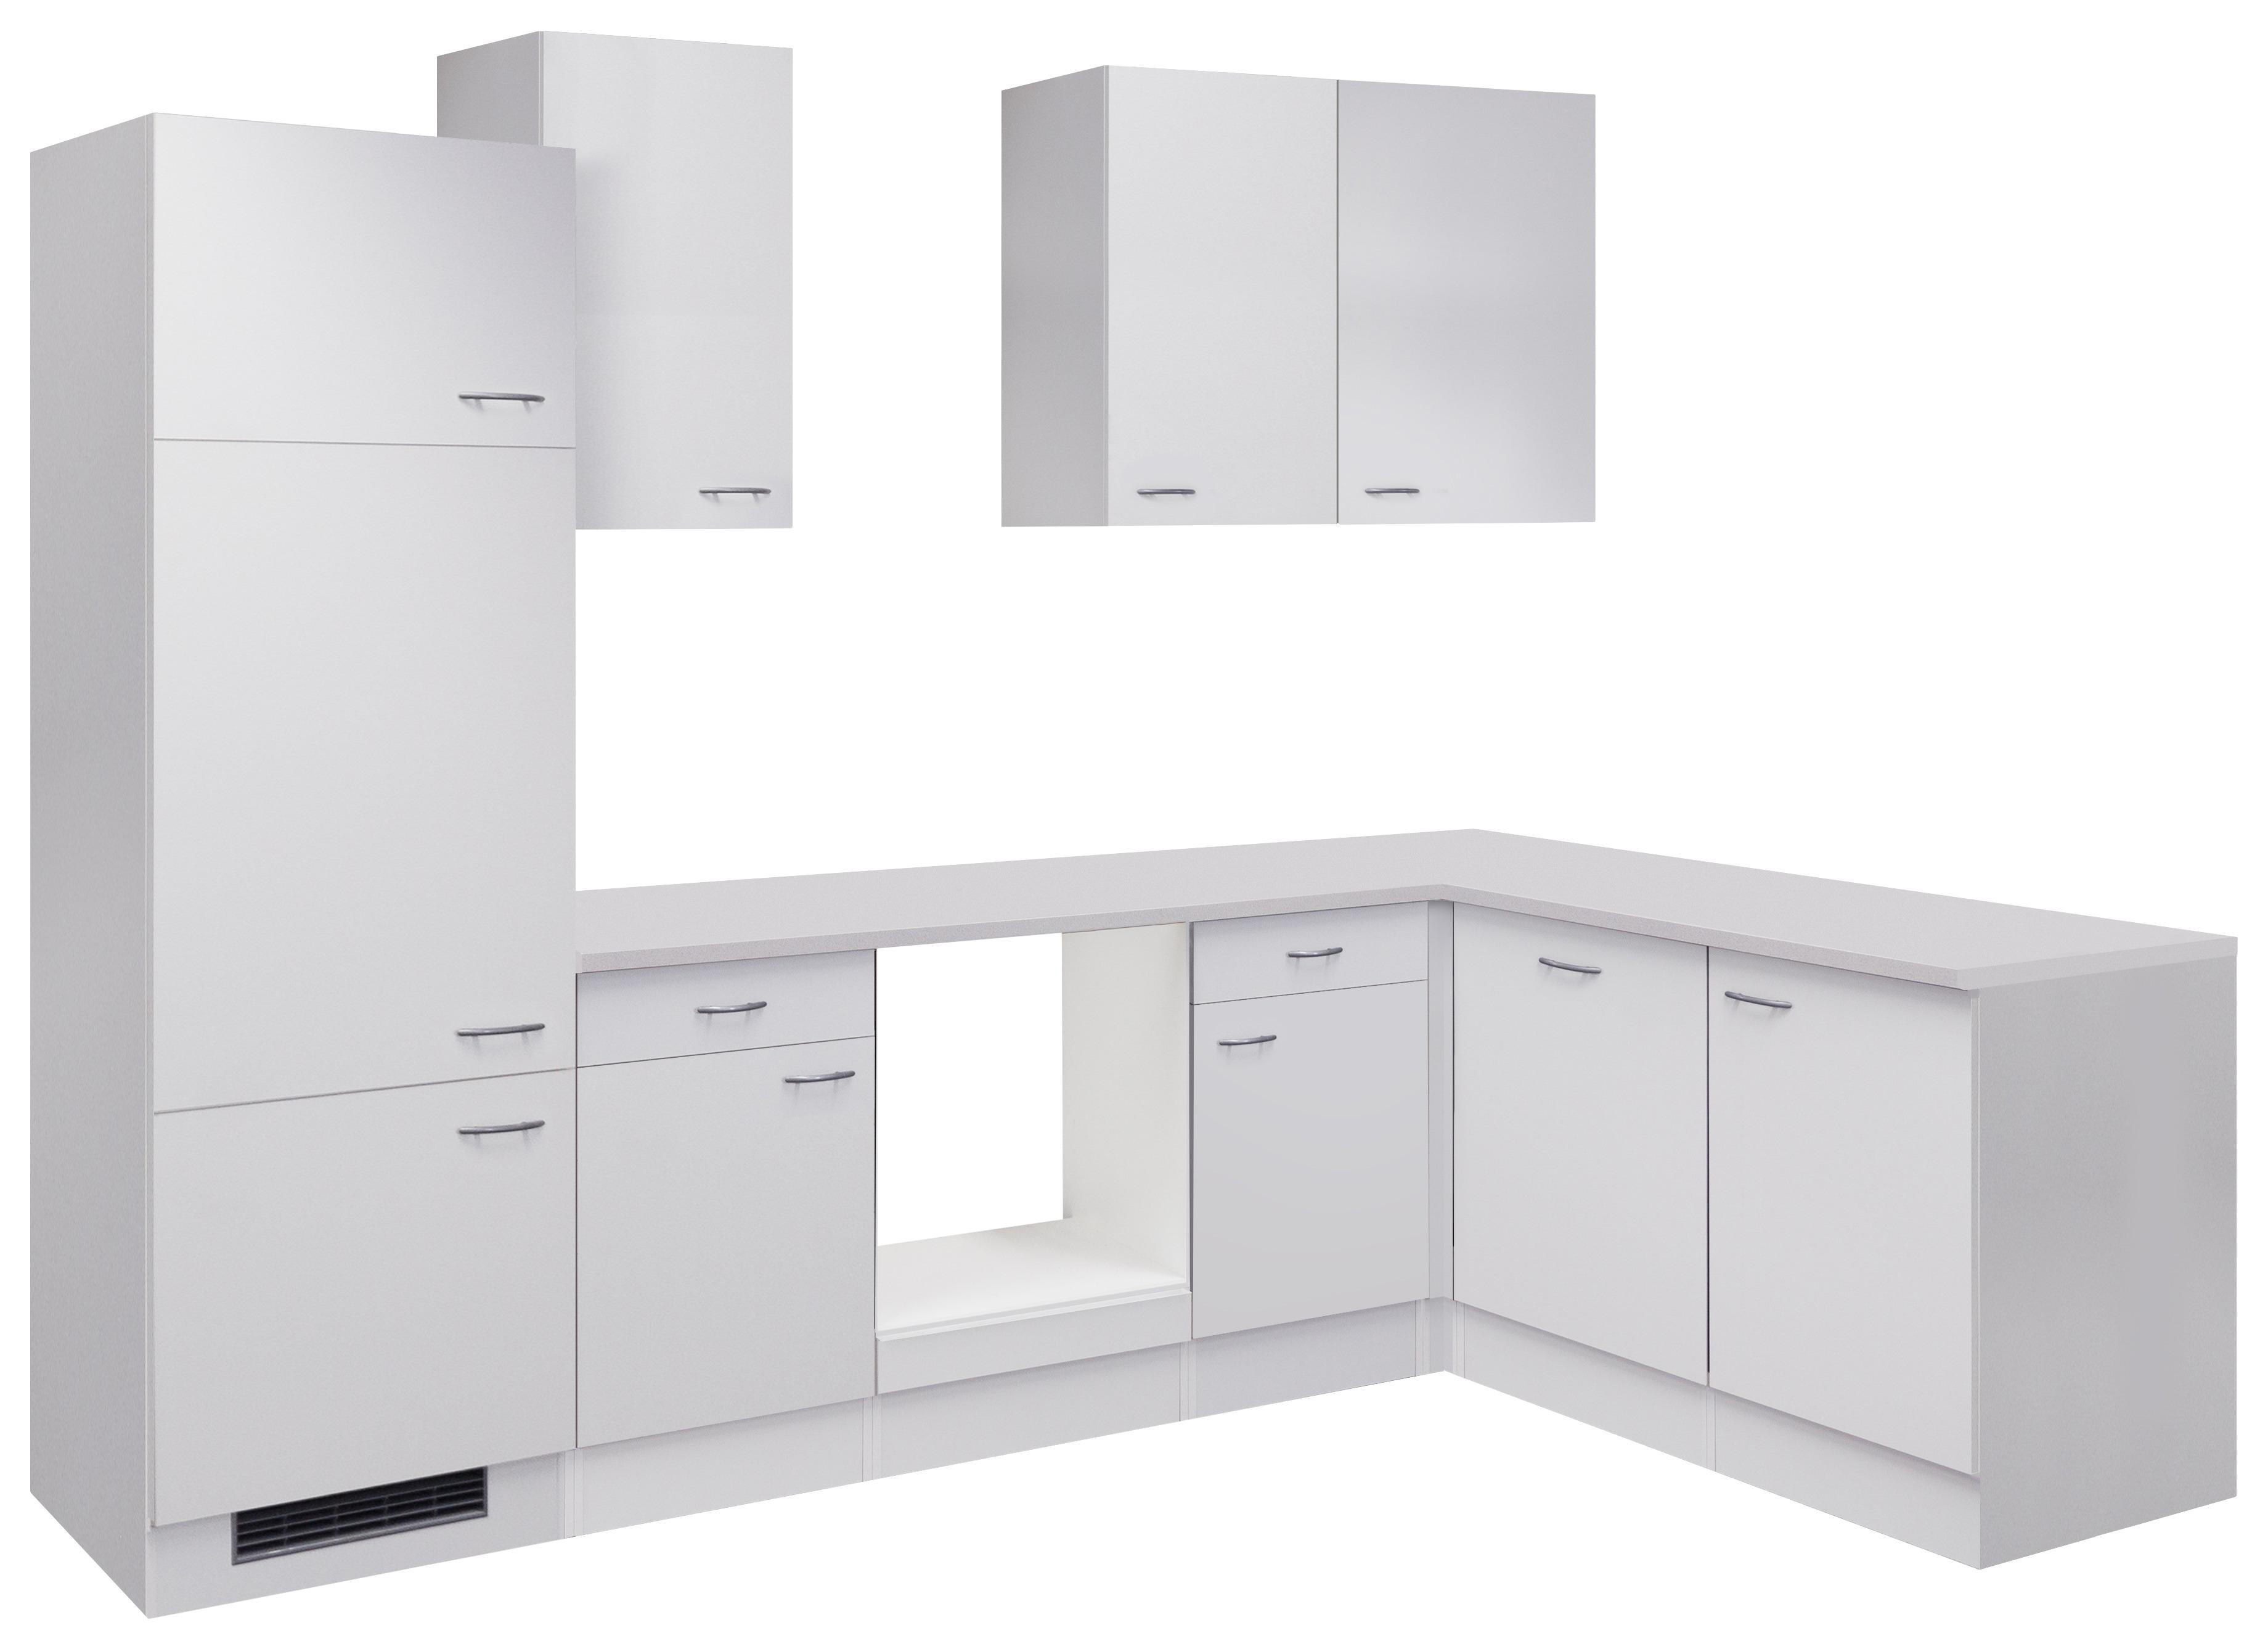 Eckküche Wito ohne Geräte 280x170 cm Weiß/Grau Modern - Weiß, KONVENTIONELL, Holzwerkstoff (280/170cm) - FlexWell